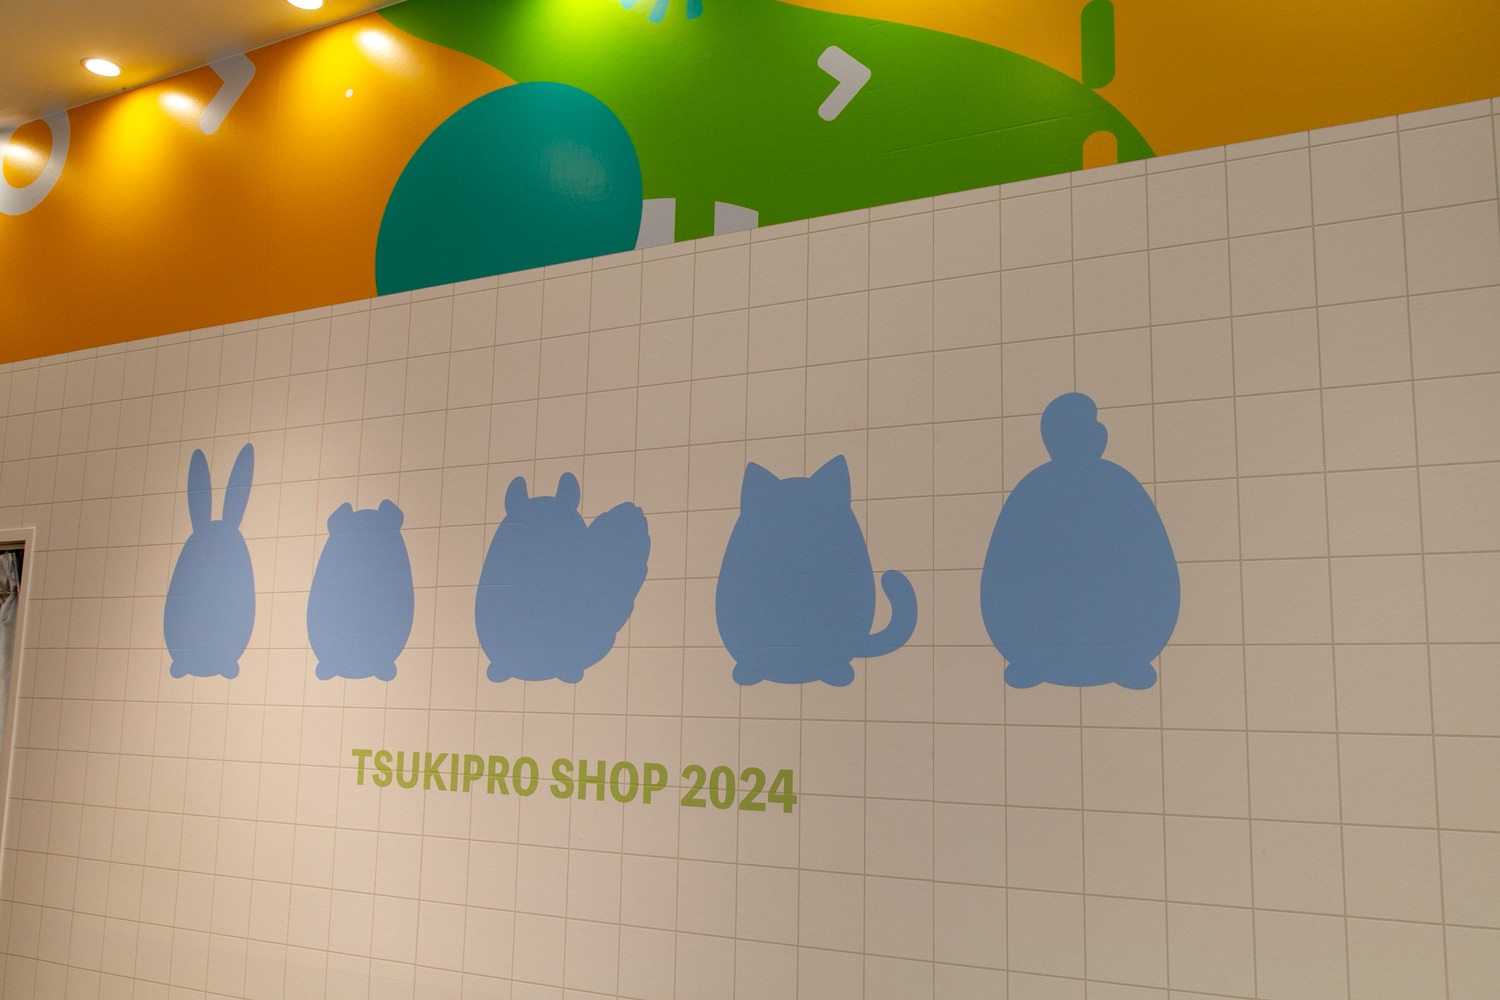 『ツキプロ』コンセプトショップ『TSUKIPRO SHOP in HARAJUKU 2024 「COT部」』が期間限定で原宿にオープン！　かわいらしい「ツキコット」たちの姿を一足早くレポート！